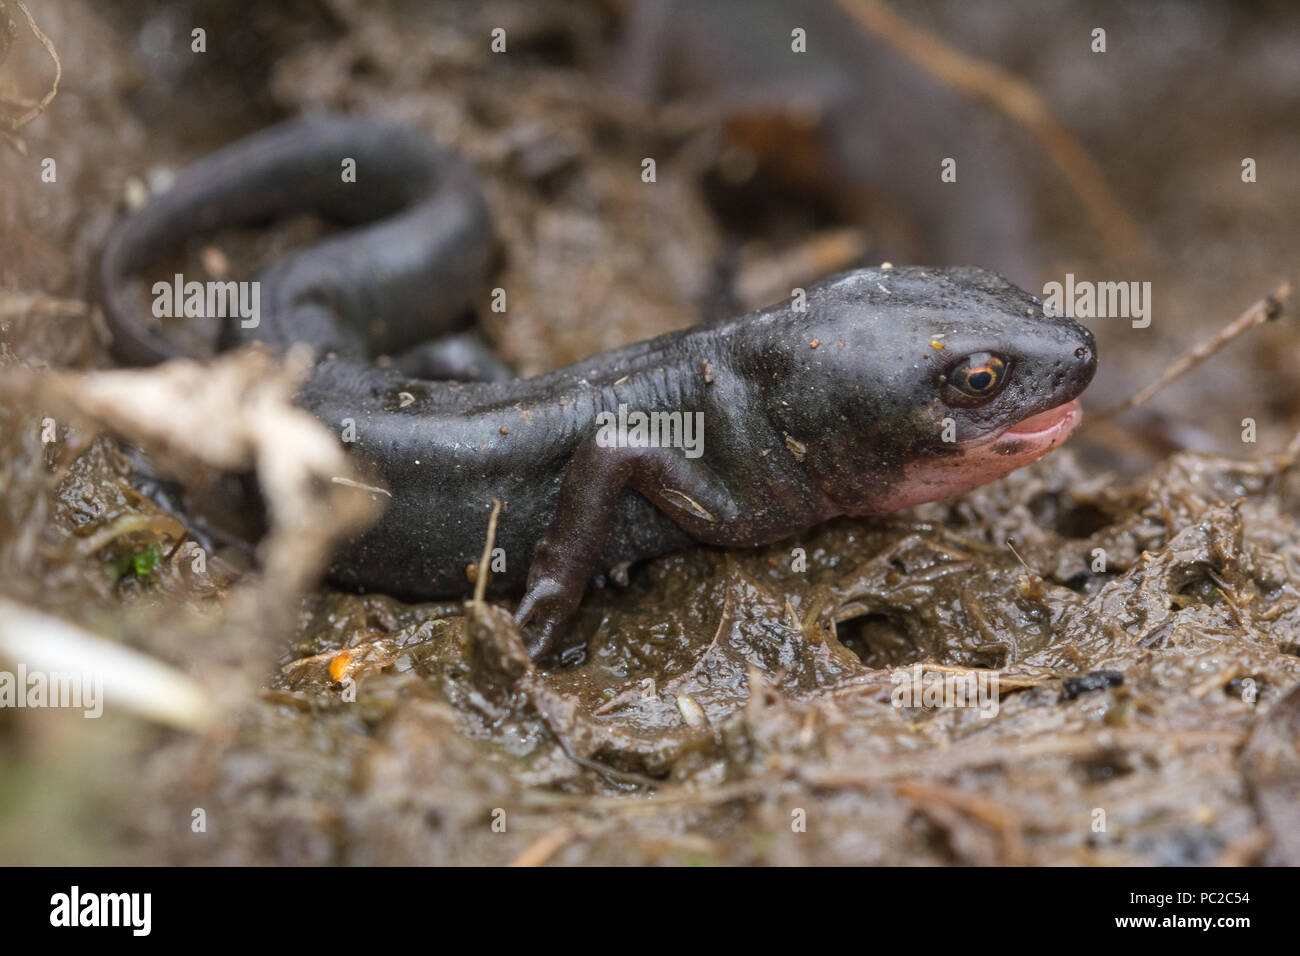 Palmate newt (Lissotriton helveticus), terrestrische Phase Tier mit offenen Mund, an Broxhead Gemeinsame, Hampshire, Großbritannien Stockfoto